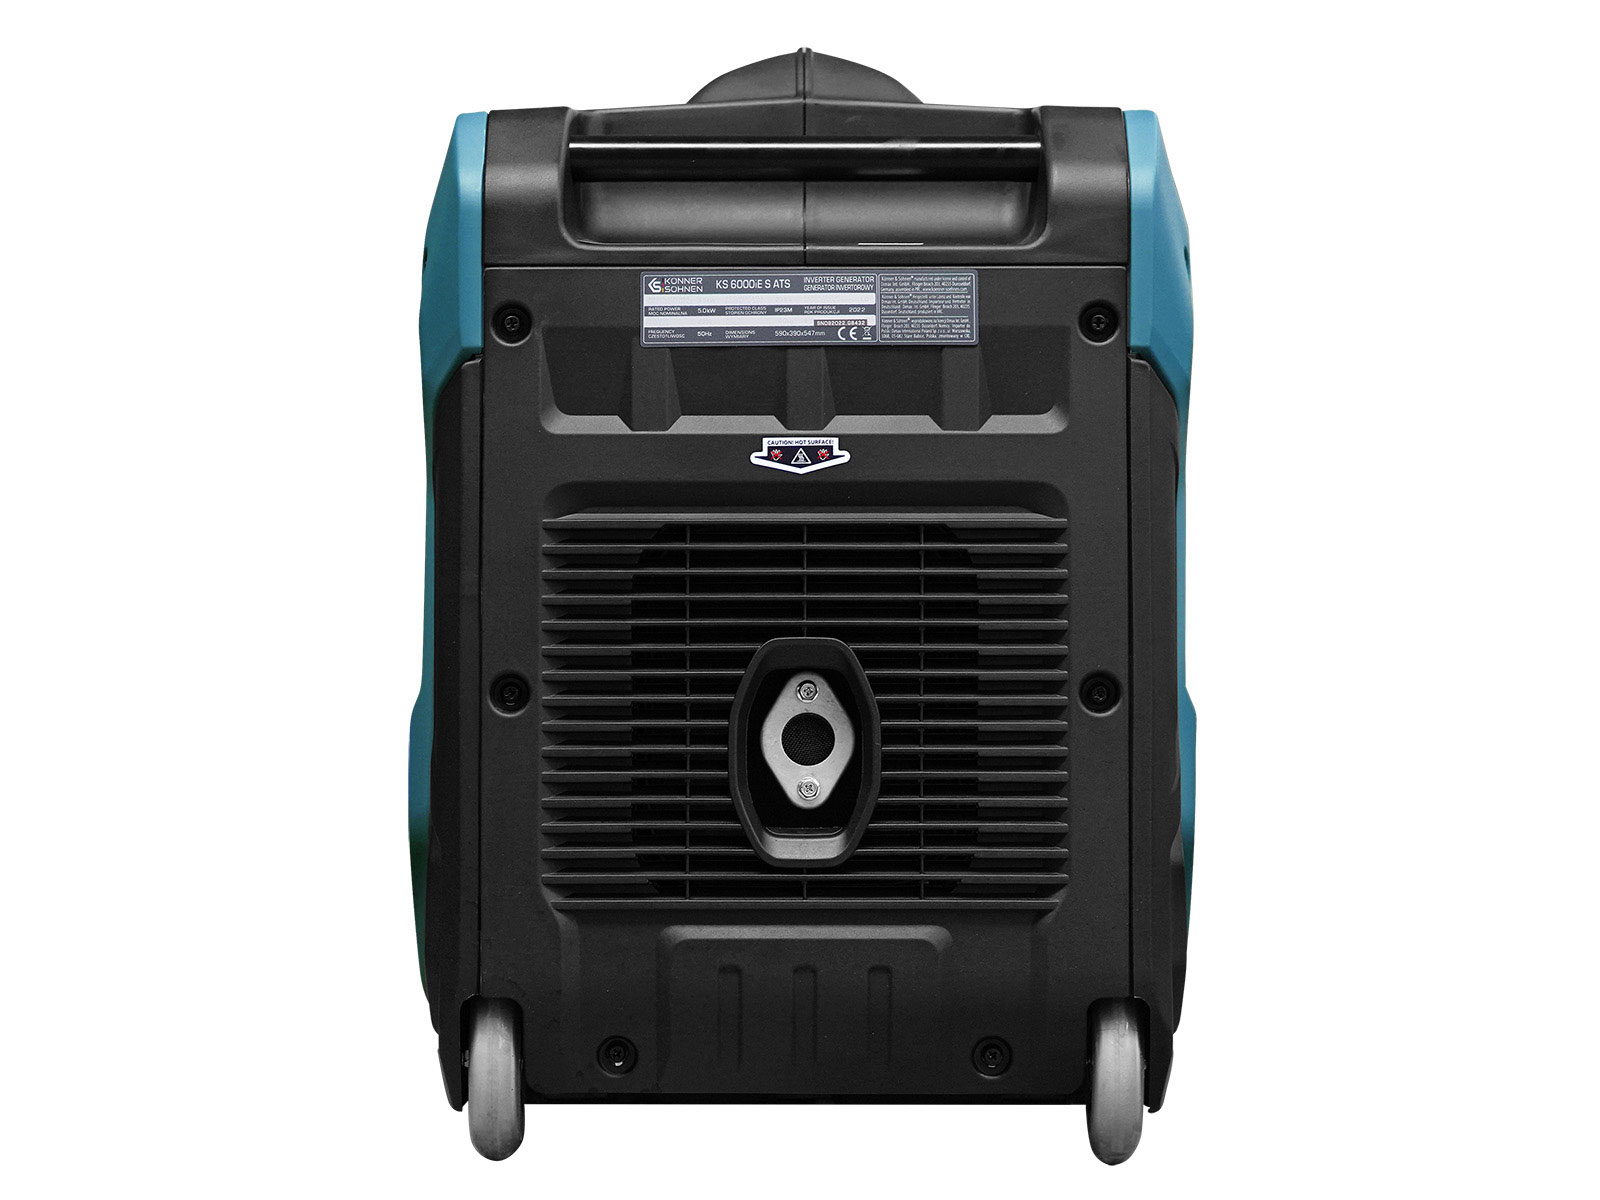 Inverter-Generator KS 6000iE S ATS Version 2